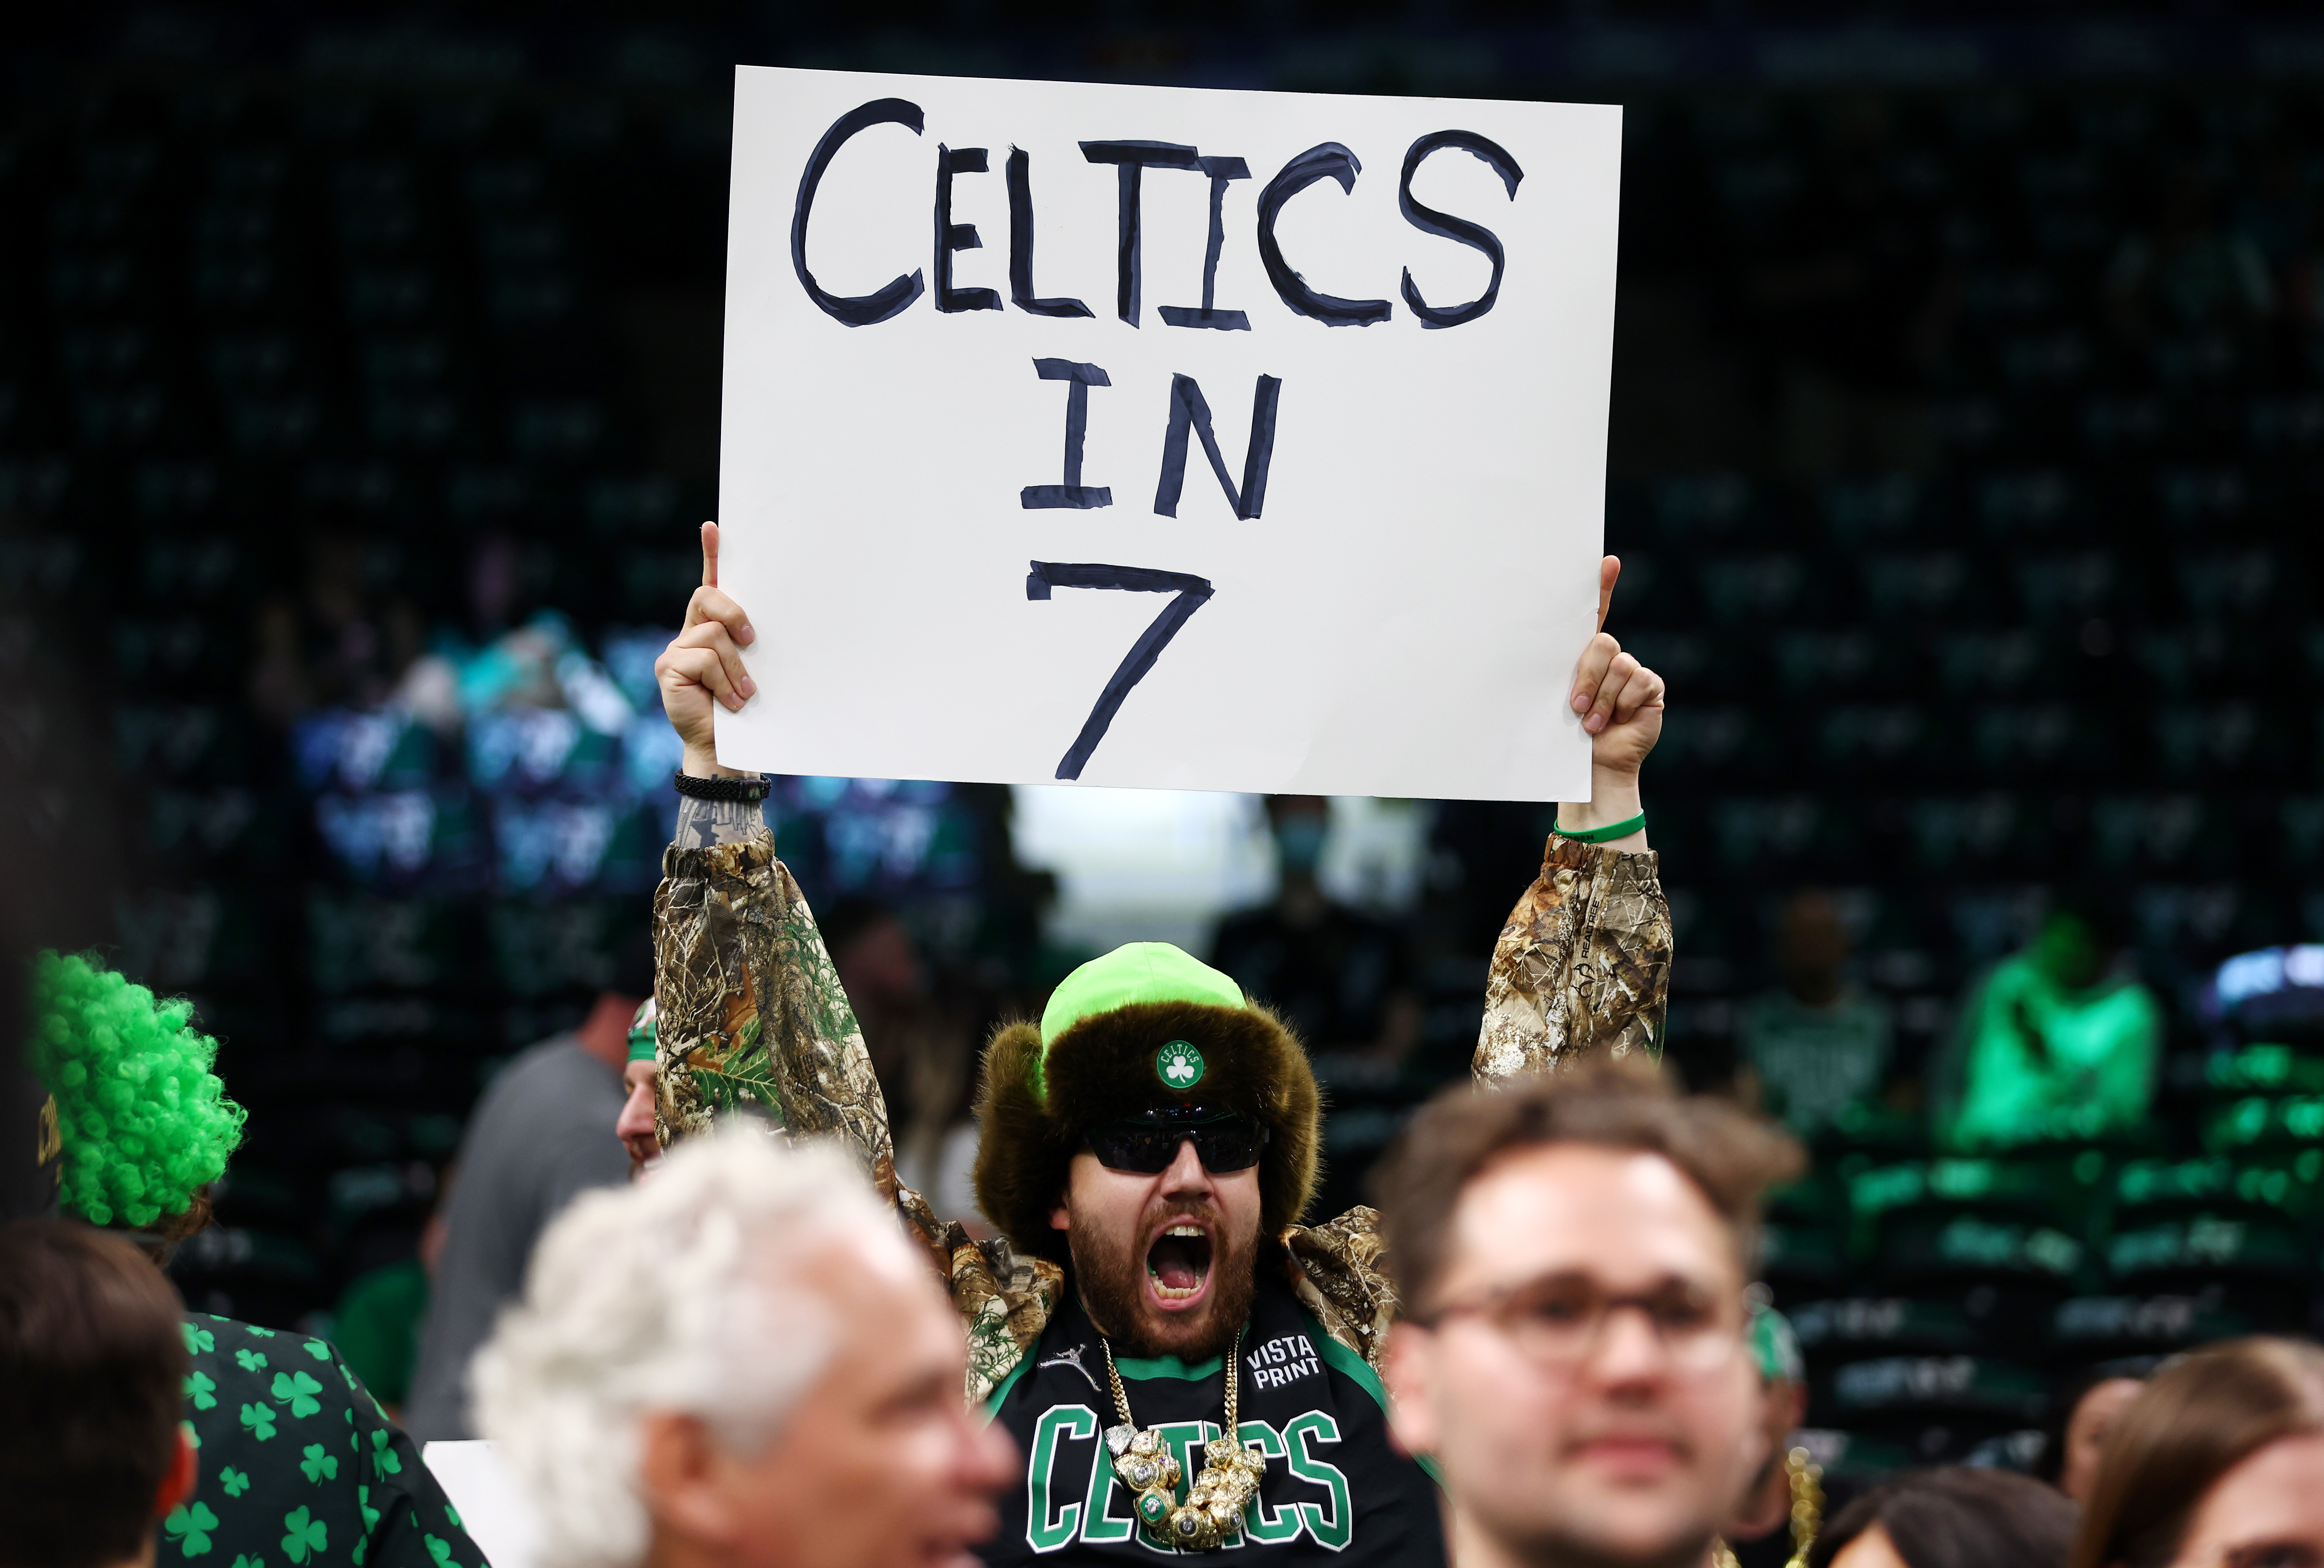 crazy celtics fans